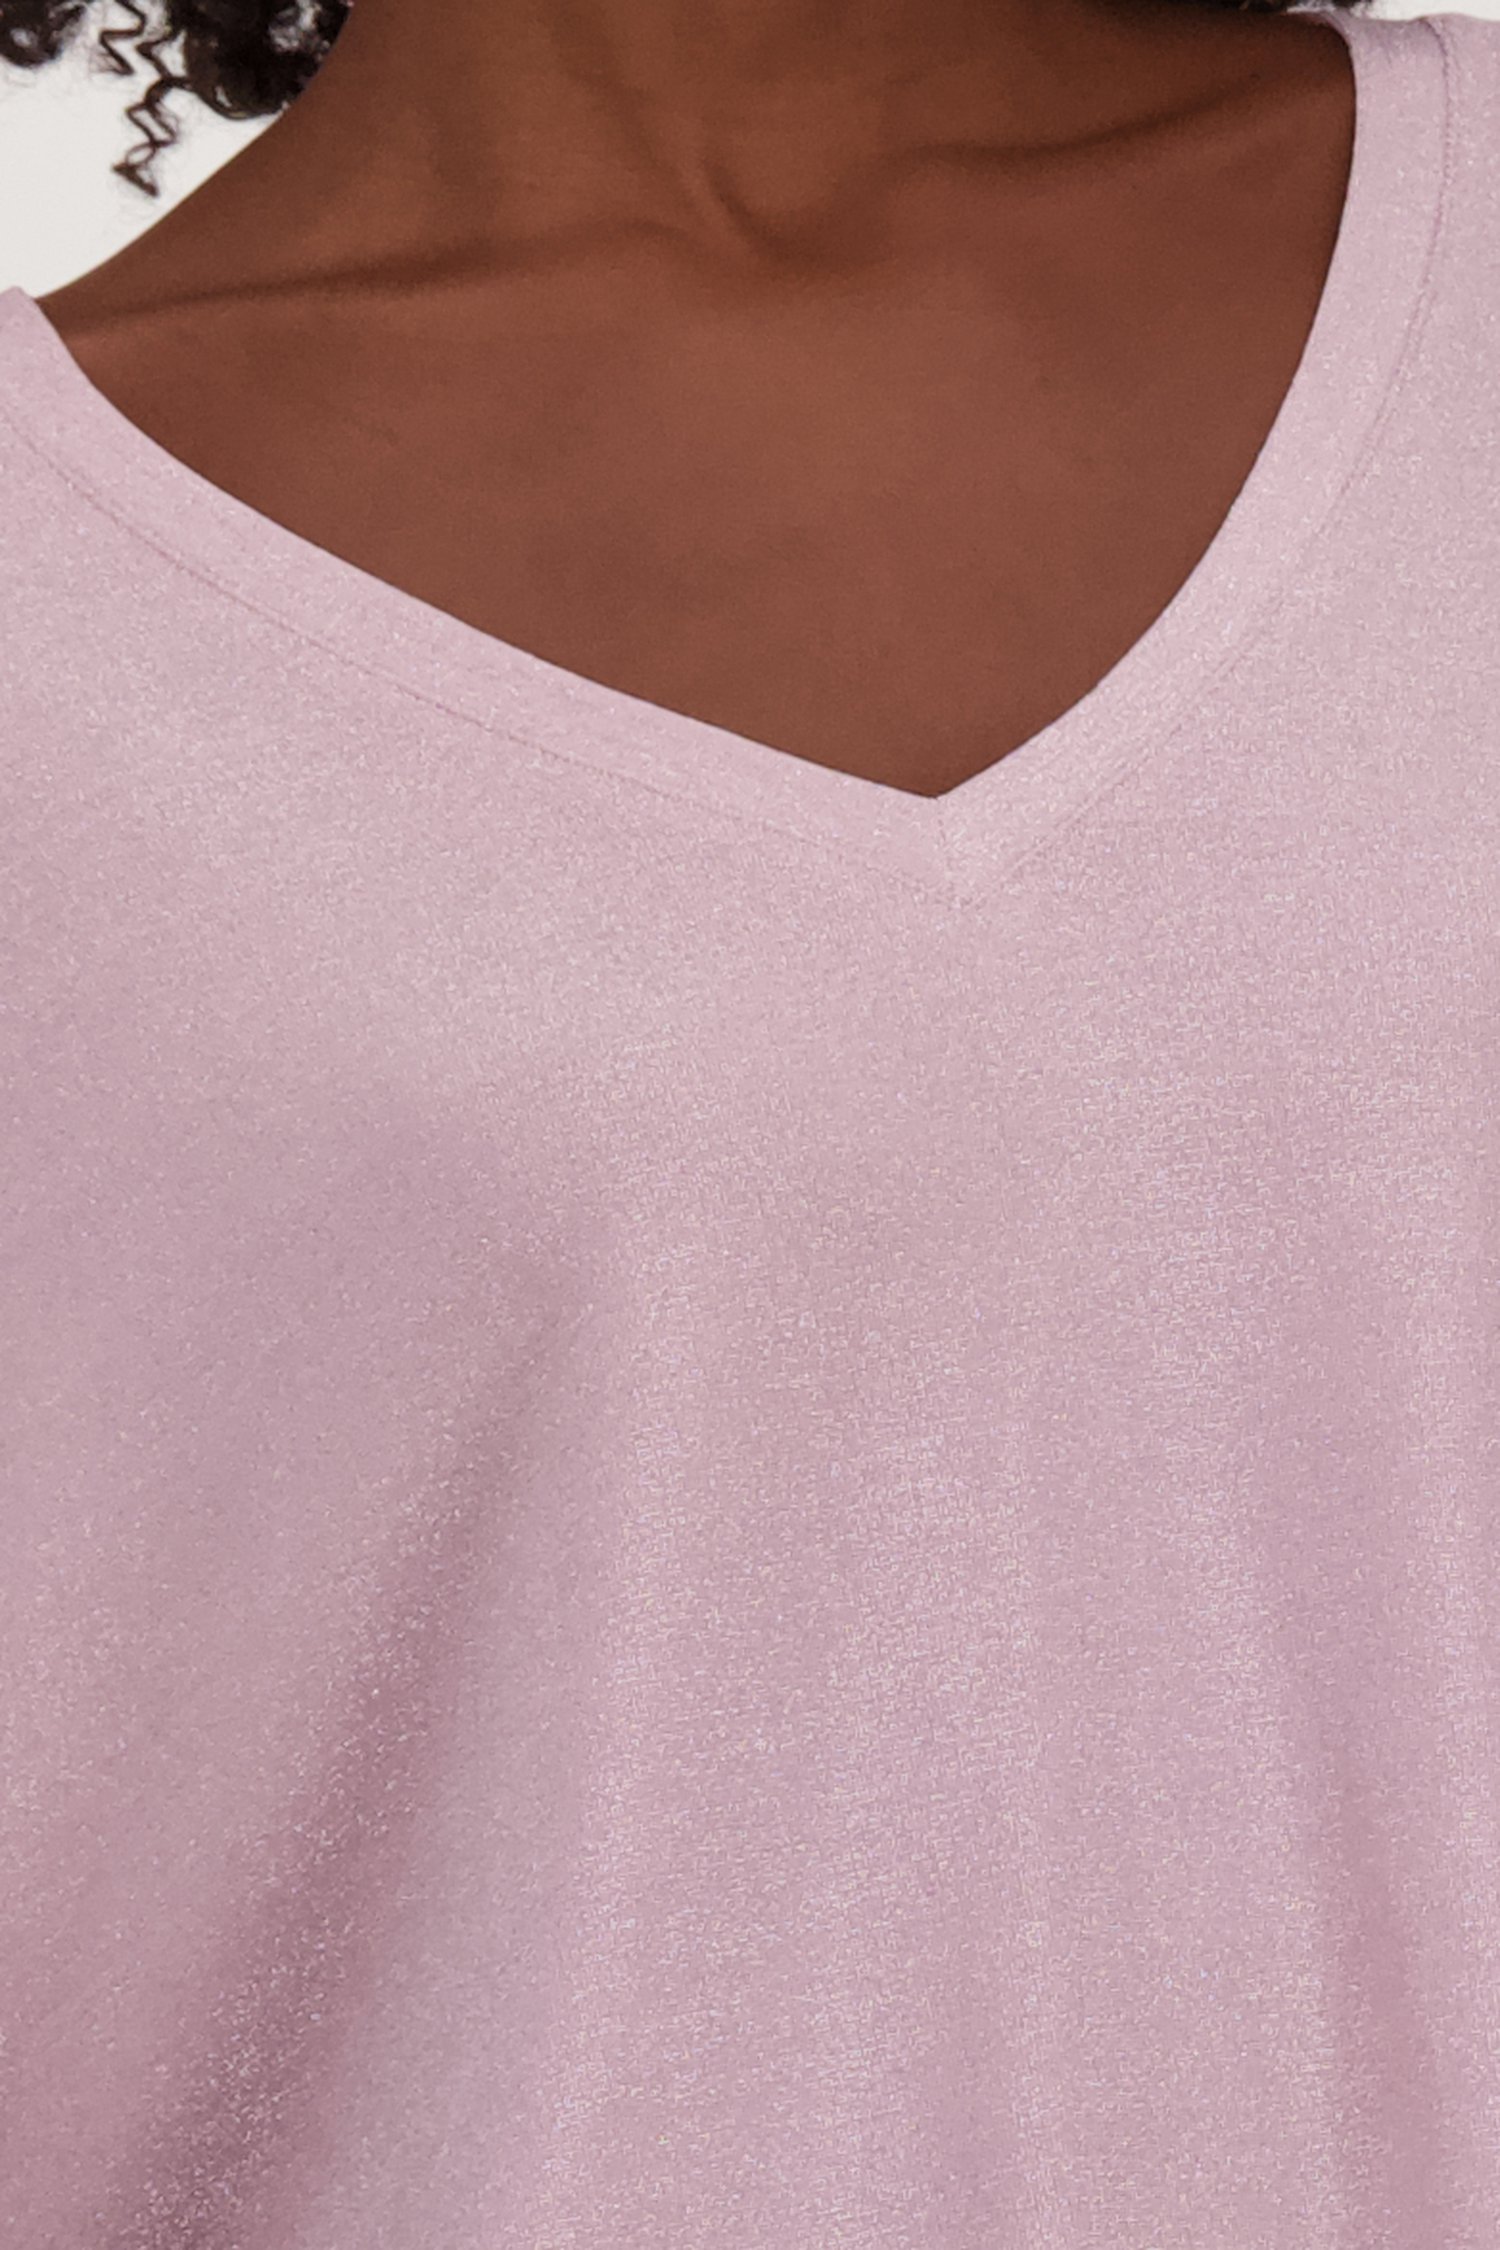 T-shirt rose clair scintillant	 de Louise pour Femmes